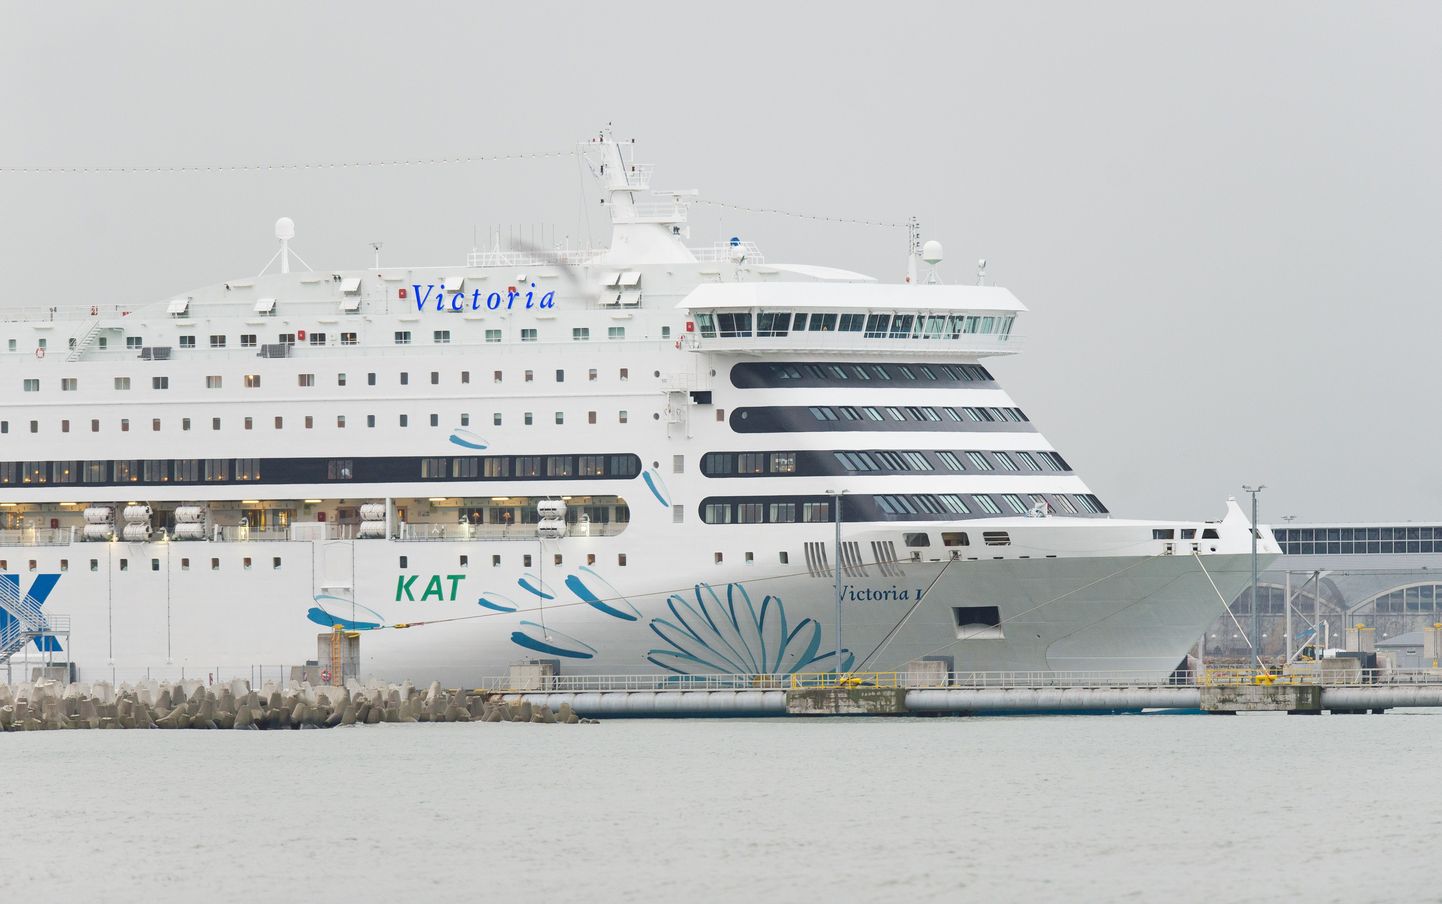 Tallinki Victoria I pöördus laupäeva hommikuks kahe akna purunemise tõttu tormiselt merelt sadamasse tagasi.